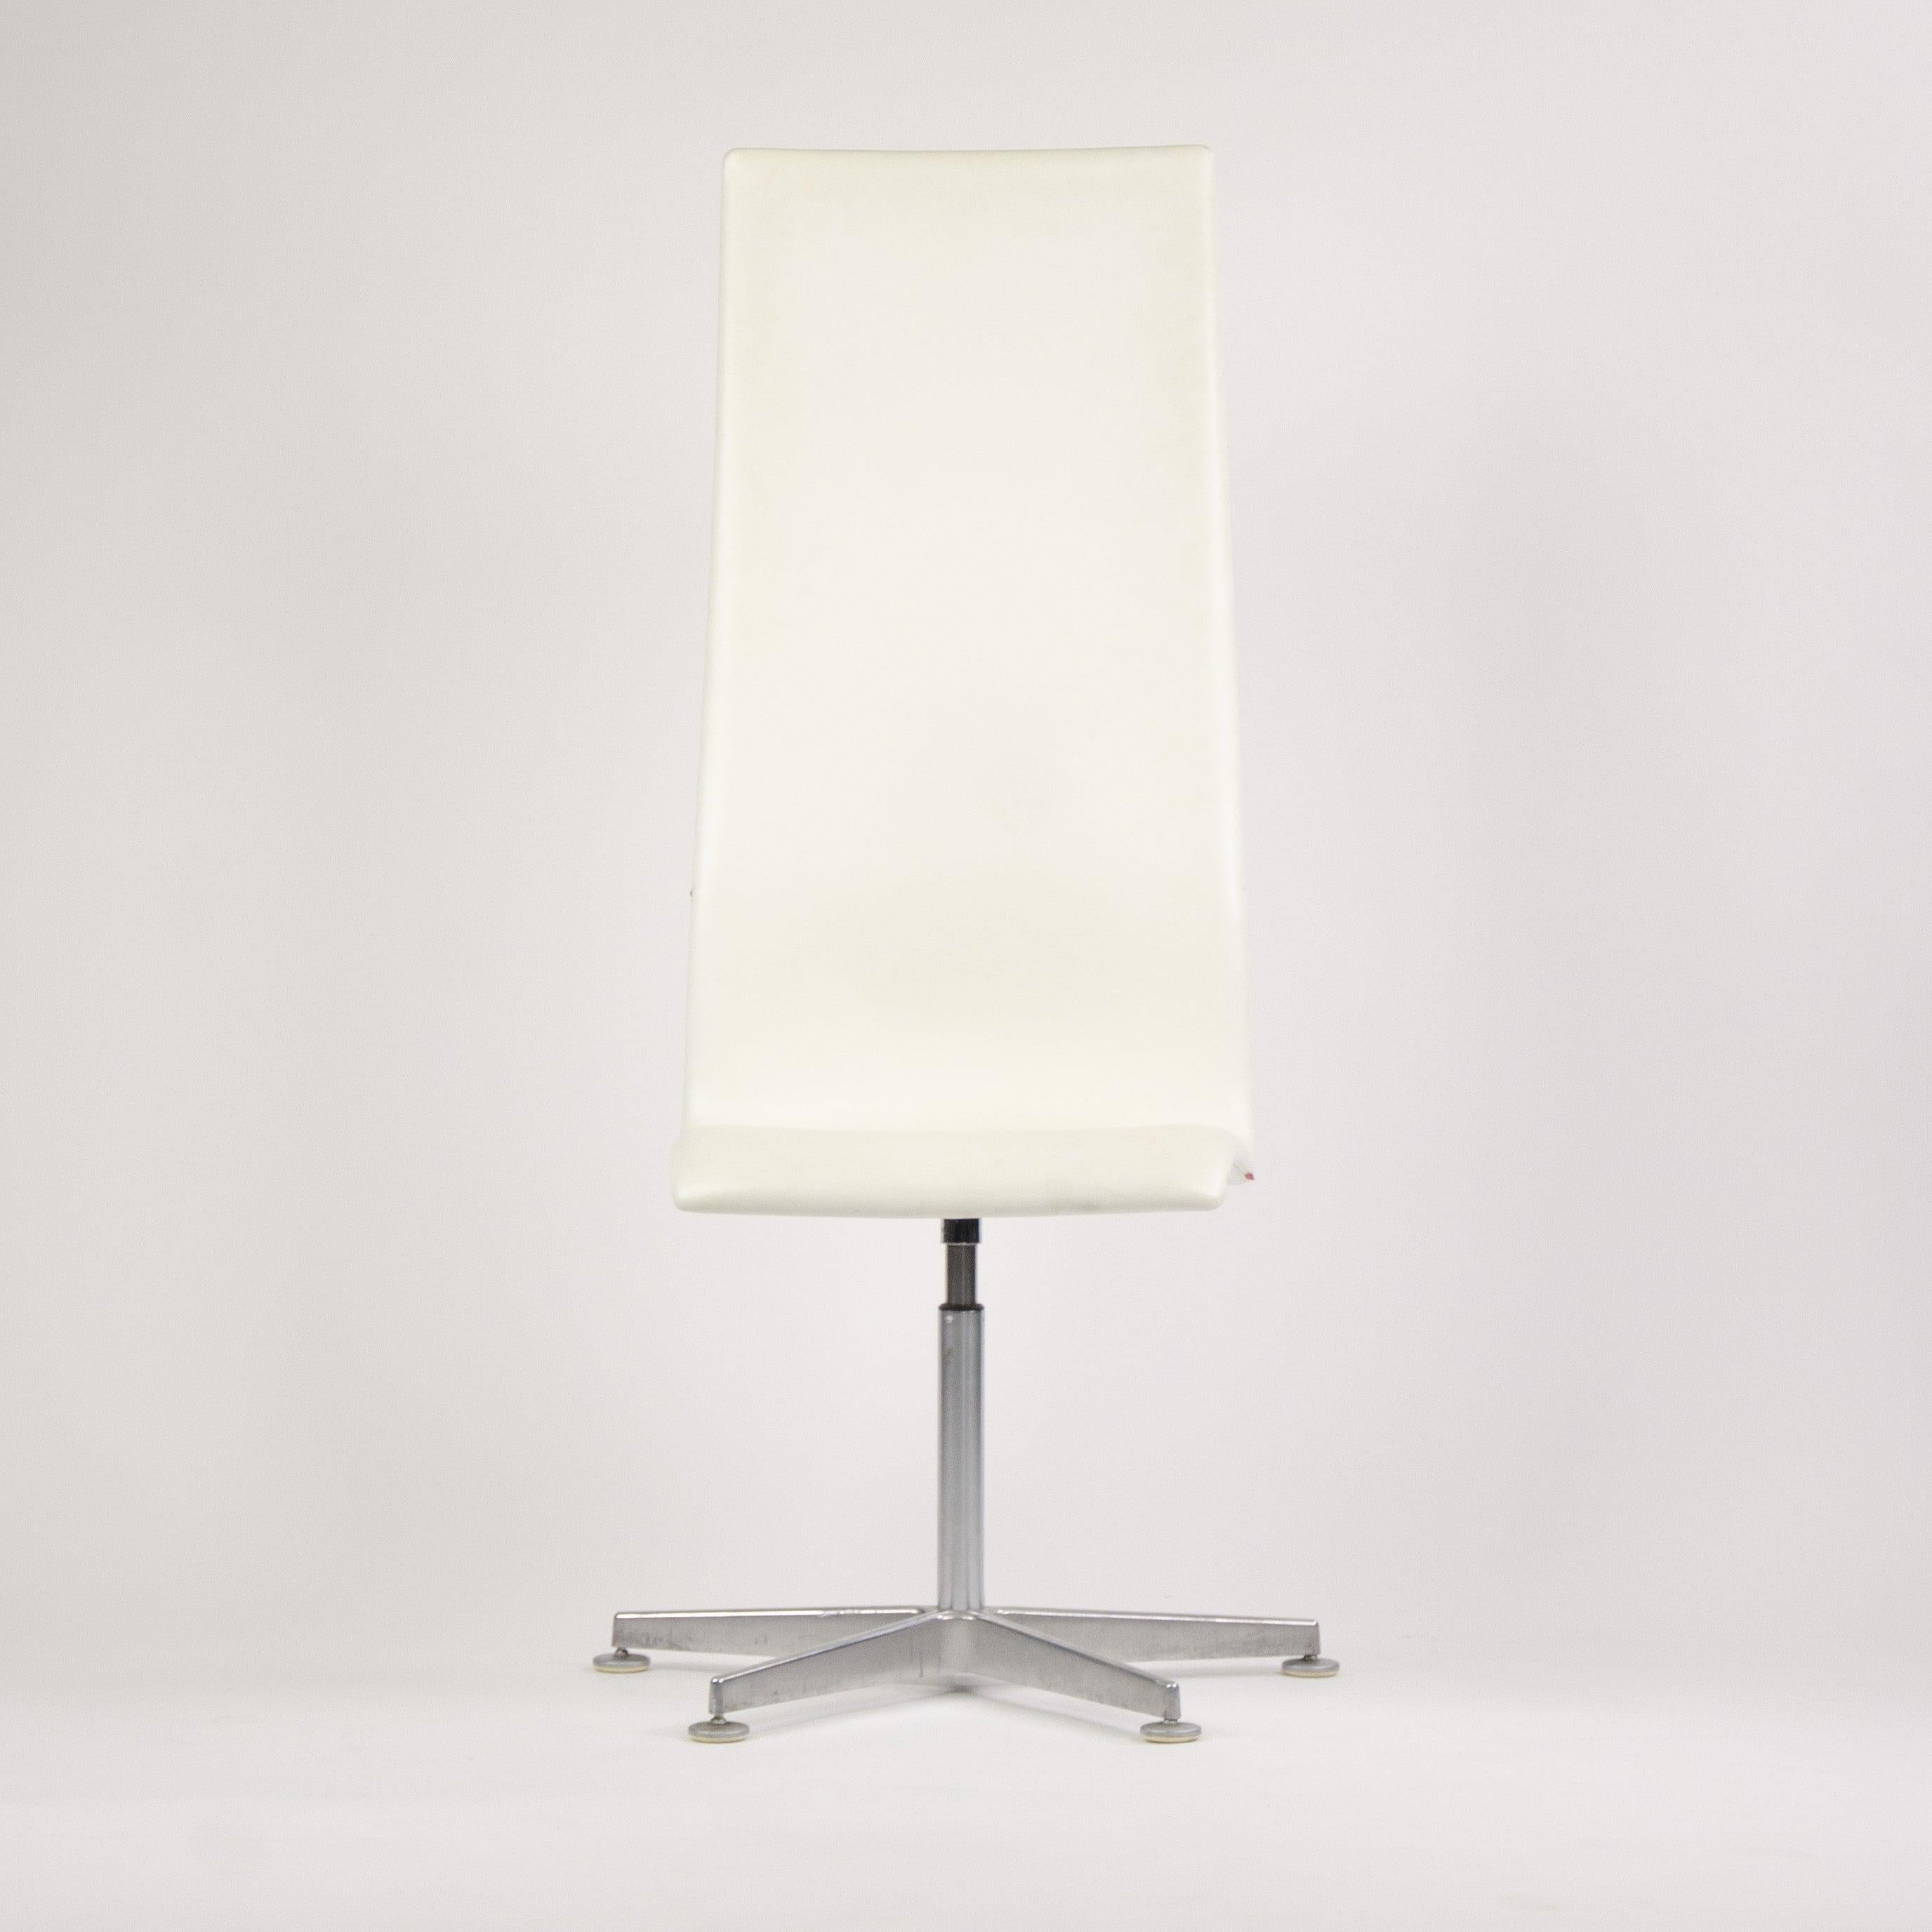 Zum Verkauf angeboten wird ein authentischer (einzeln verkauft) Label Arne Jacobsen hohen Oxford-Stuhl in weißem Leder mit einem schönen gebürstetem Aluminium base.four Stühle sind verfügbar.  

Die Stühle wurden im Jahr 2007 für ein sehr